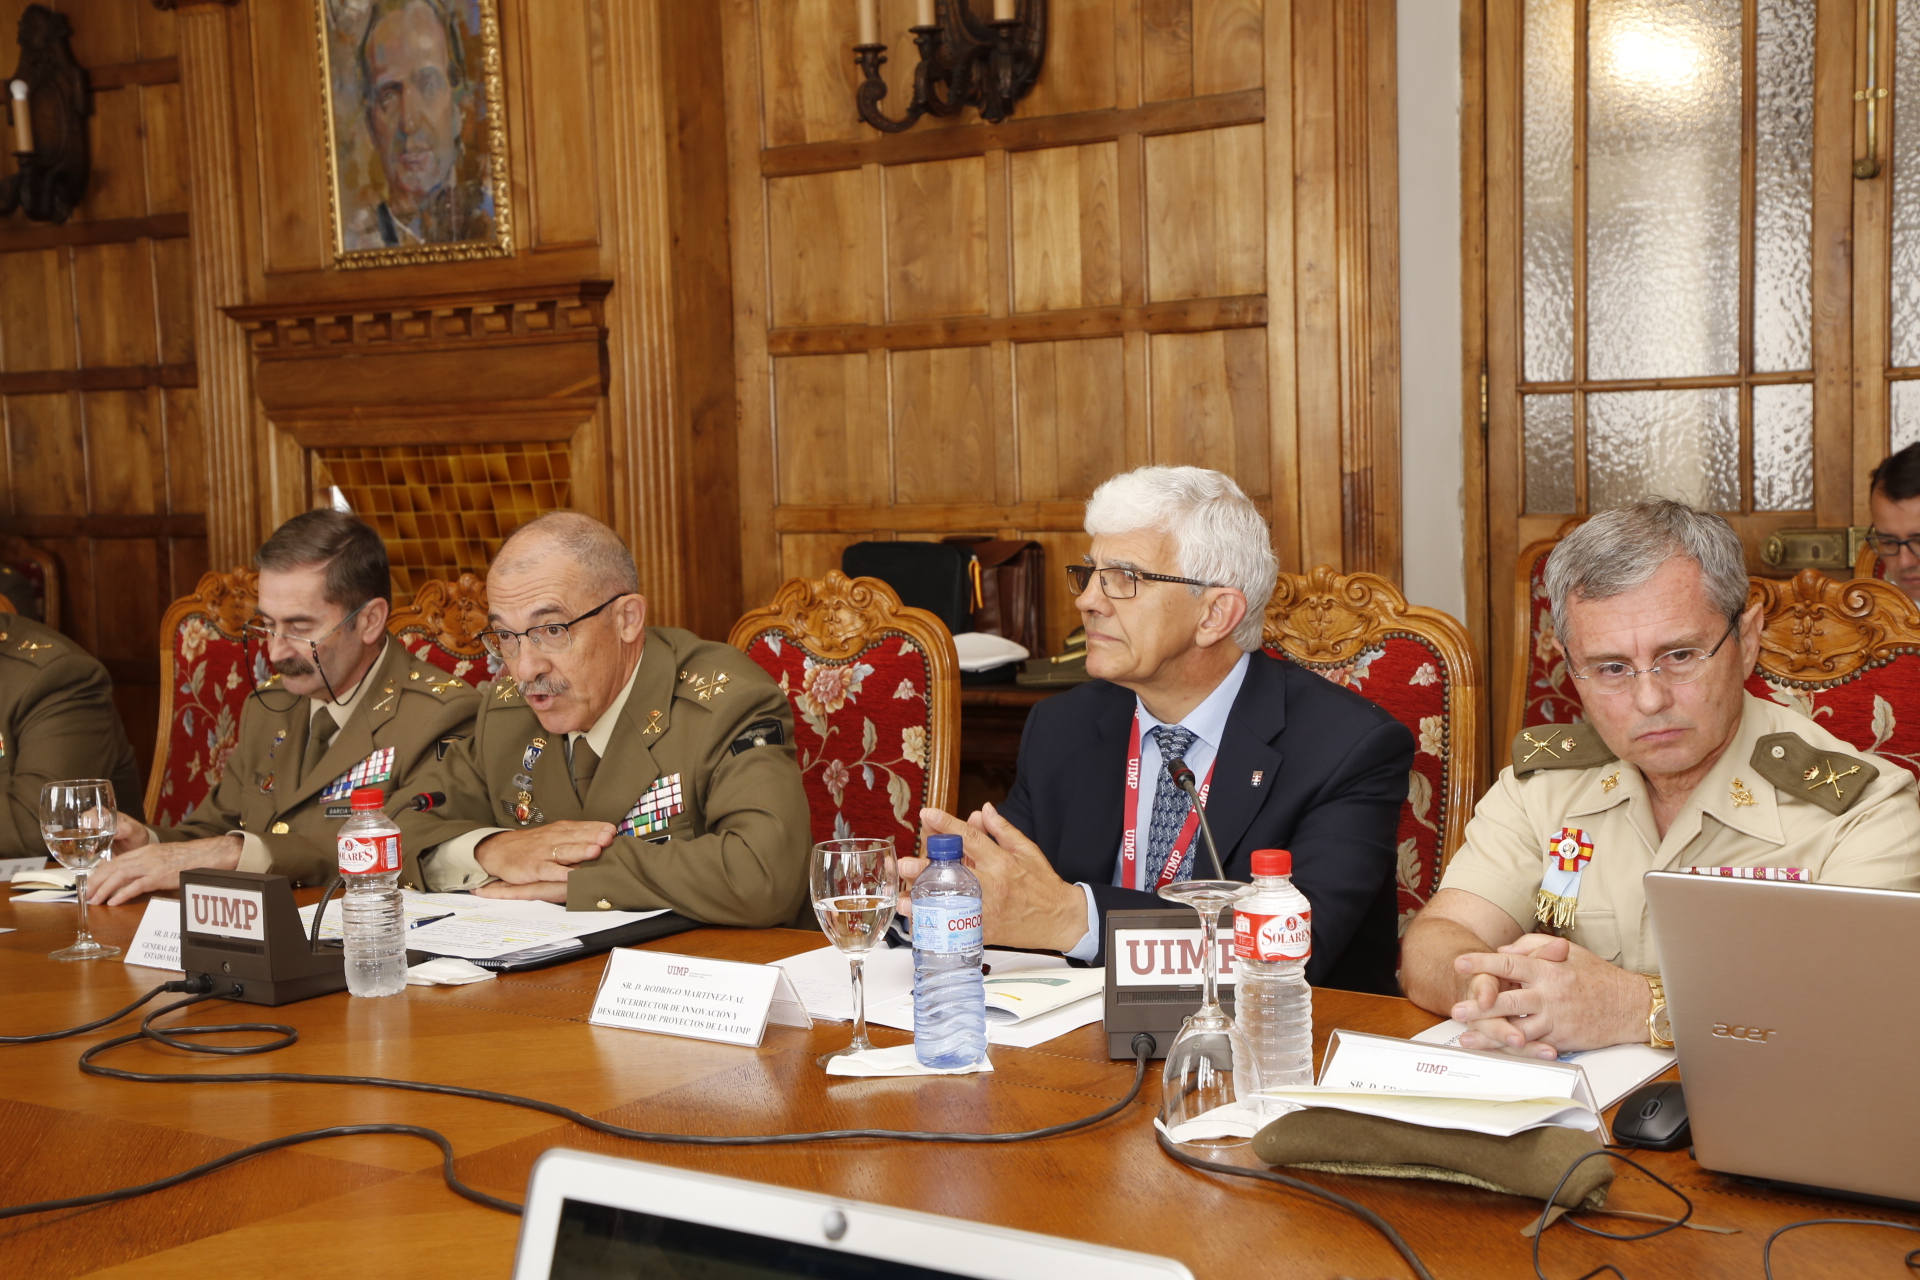 El Jefe de Estado Mayor de la Defensa inaugura el curso “Las Fuerzas Armadas en el mundo actual”